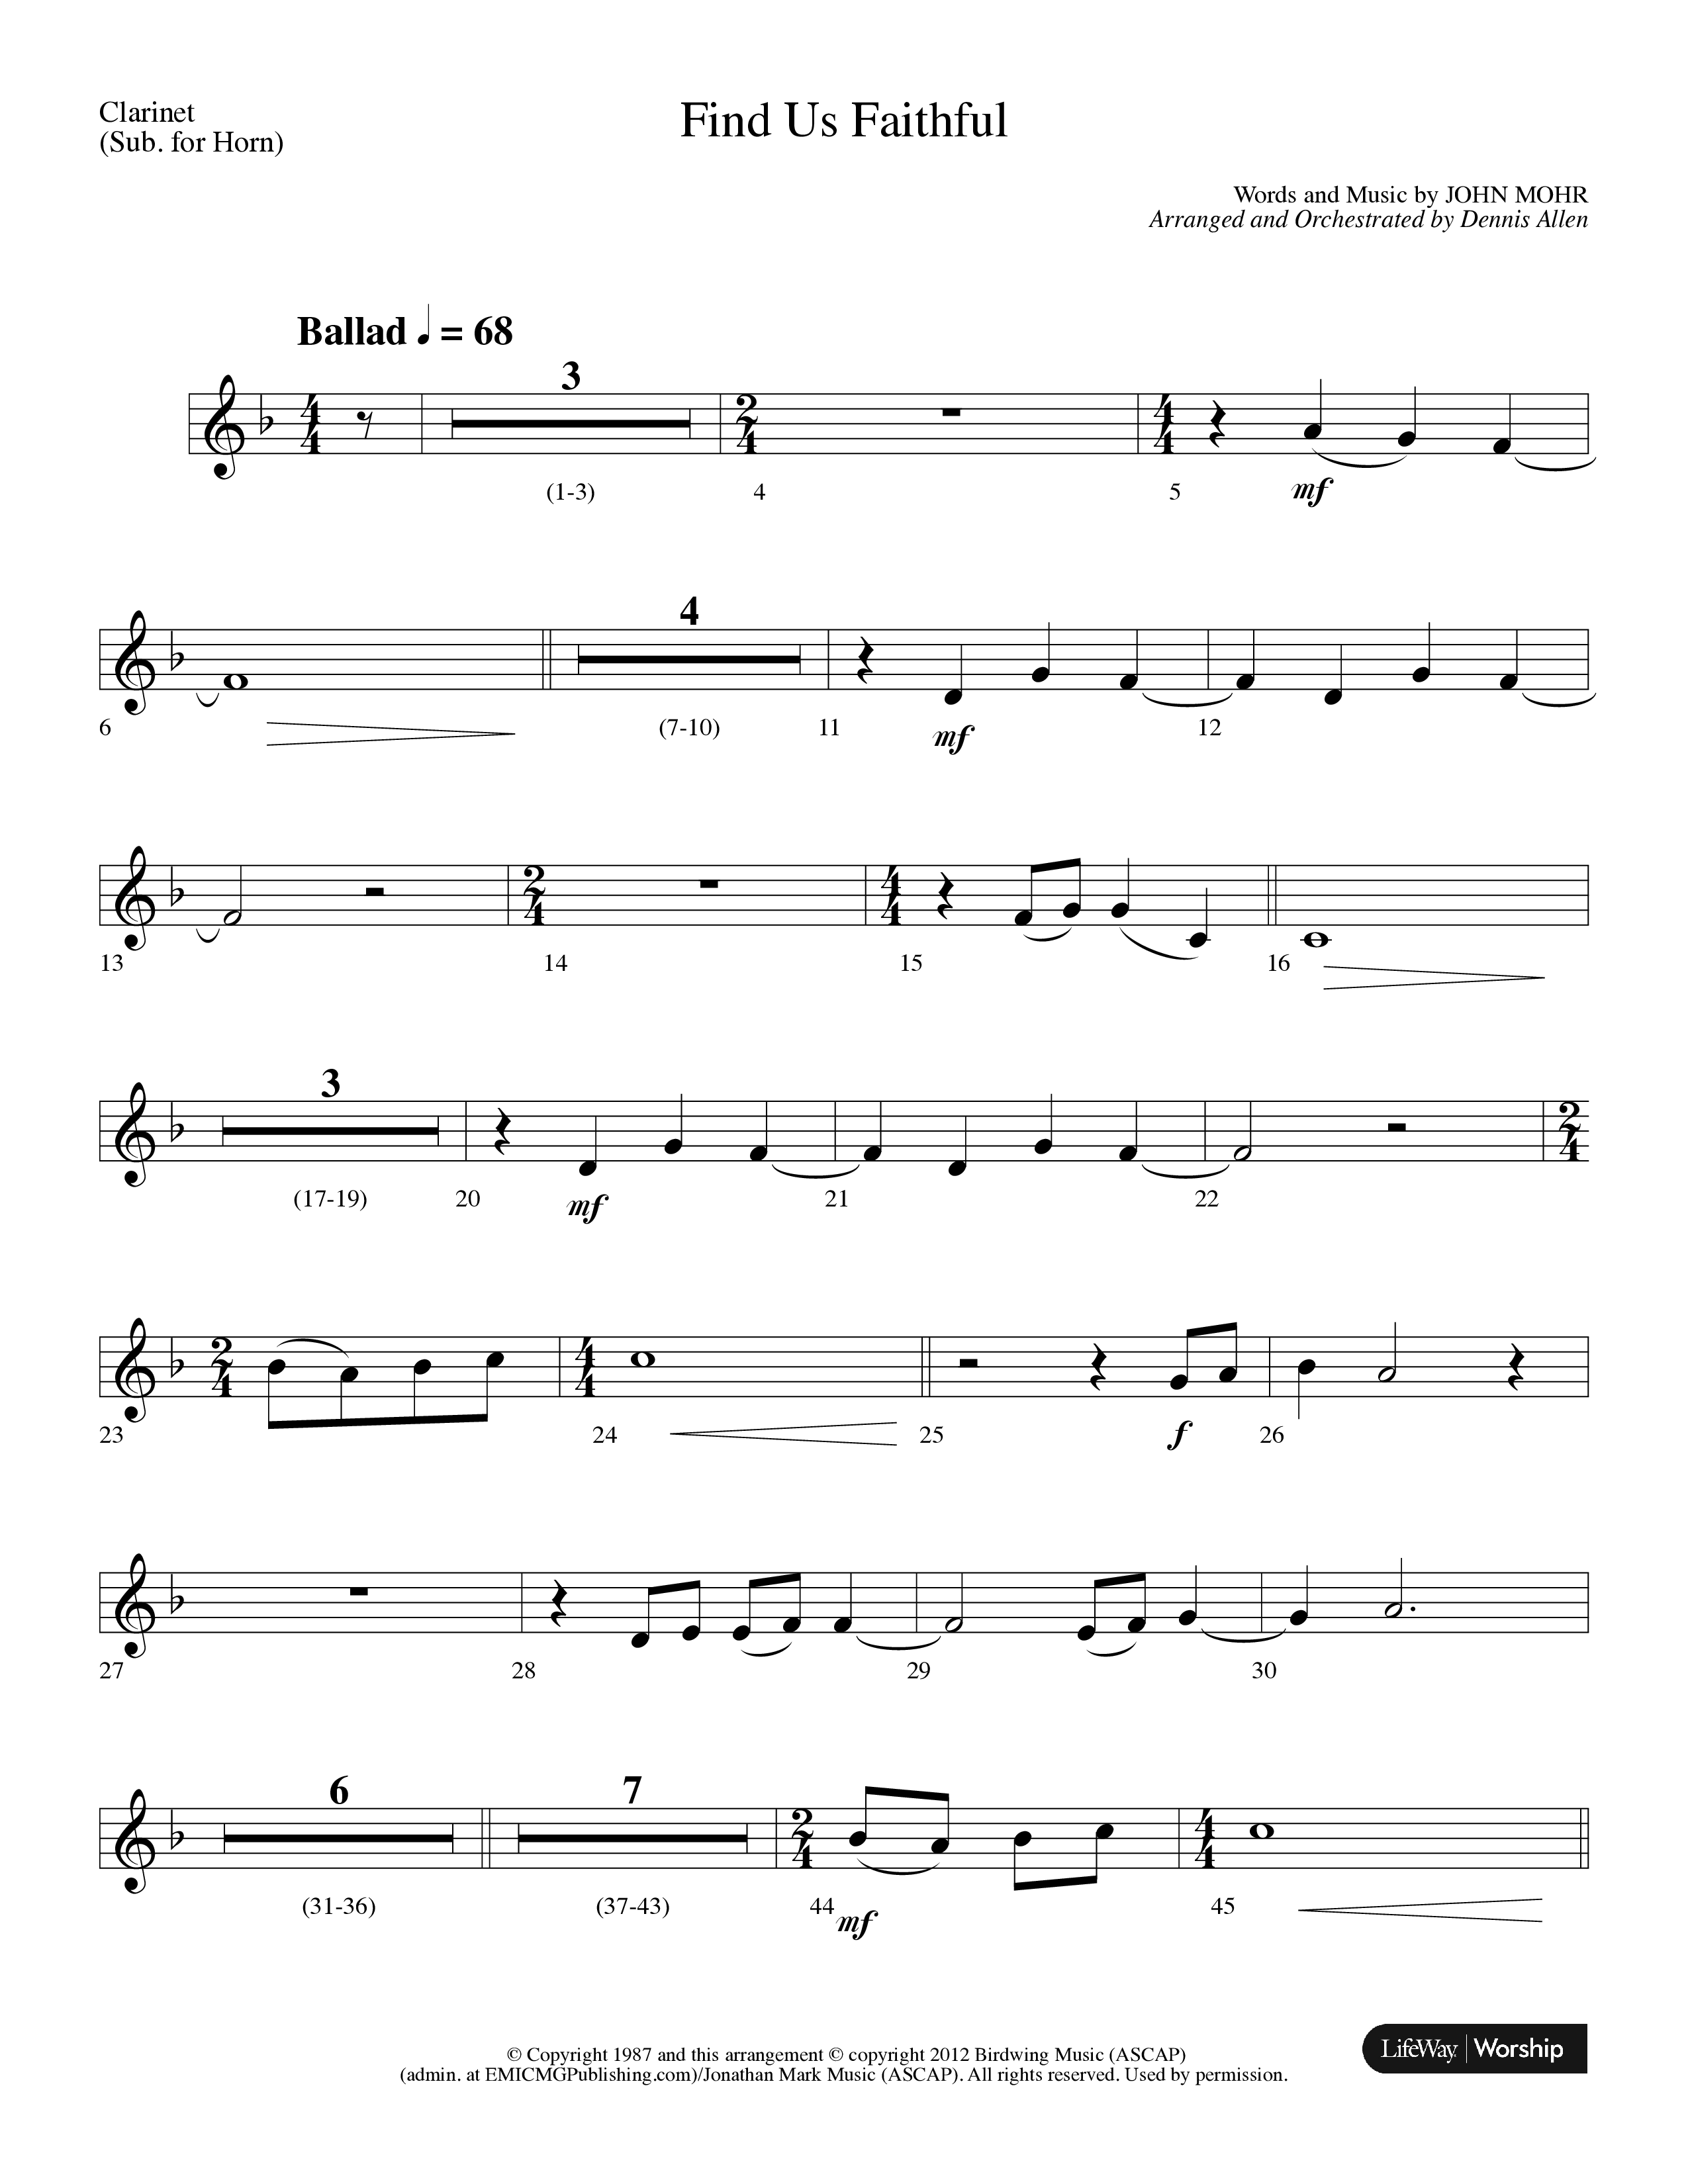 Find Us Faithful (Choral Anthem SATB) Clarinet (Lifeway Choral / Arr. Dennis Allen)